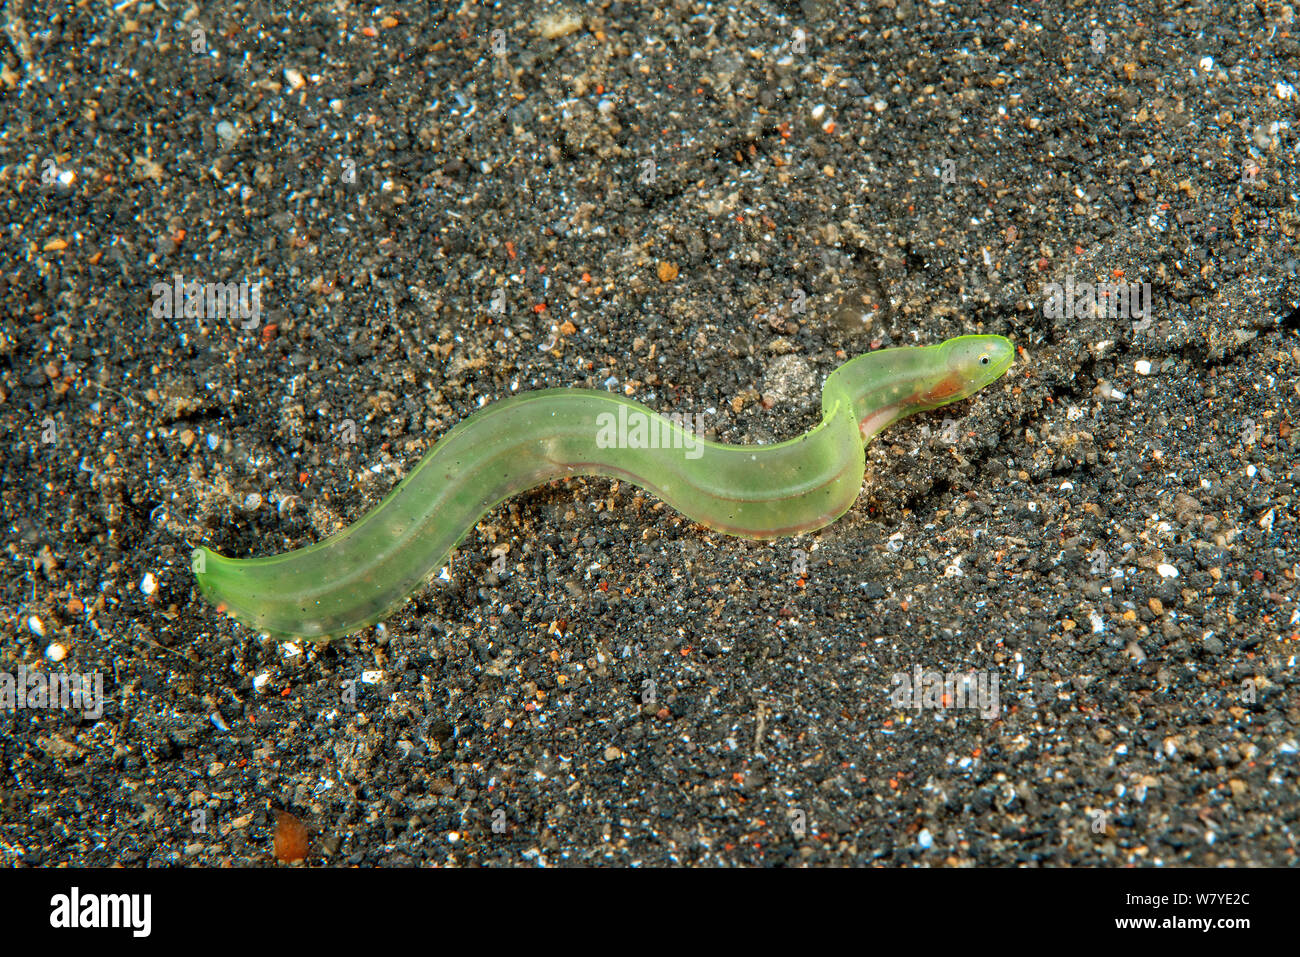 Am Ende der Larve nicht identifizierten transparente Muränen (Muraenidae). Lembeh Strait, Nord Sulawesi, Infonesia, Februar 2013. Stockfoto